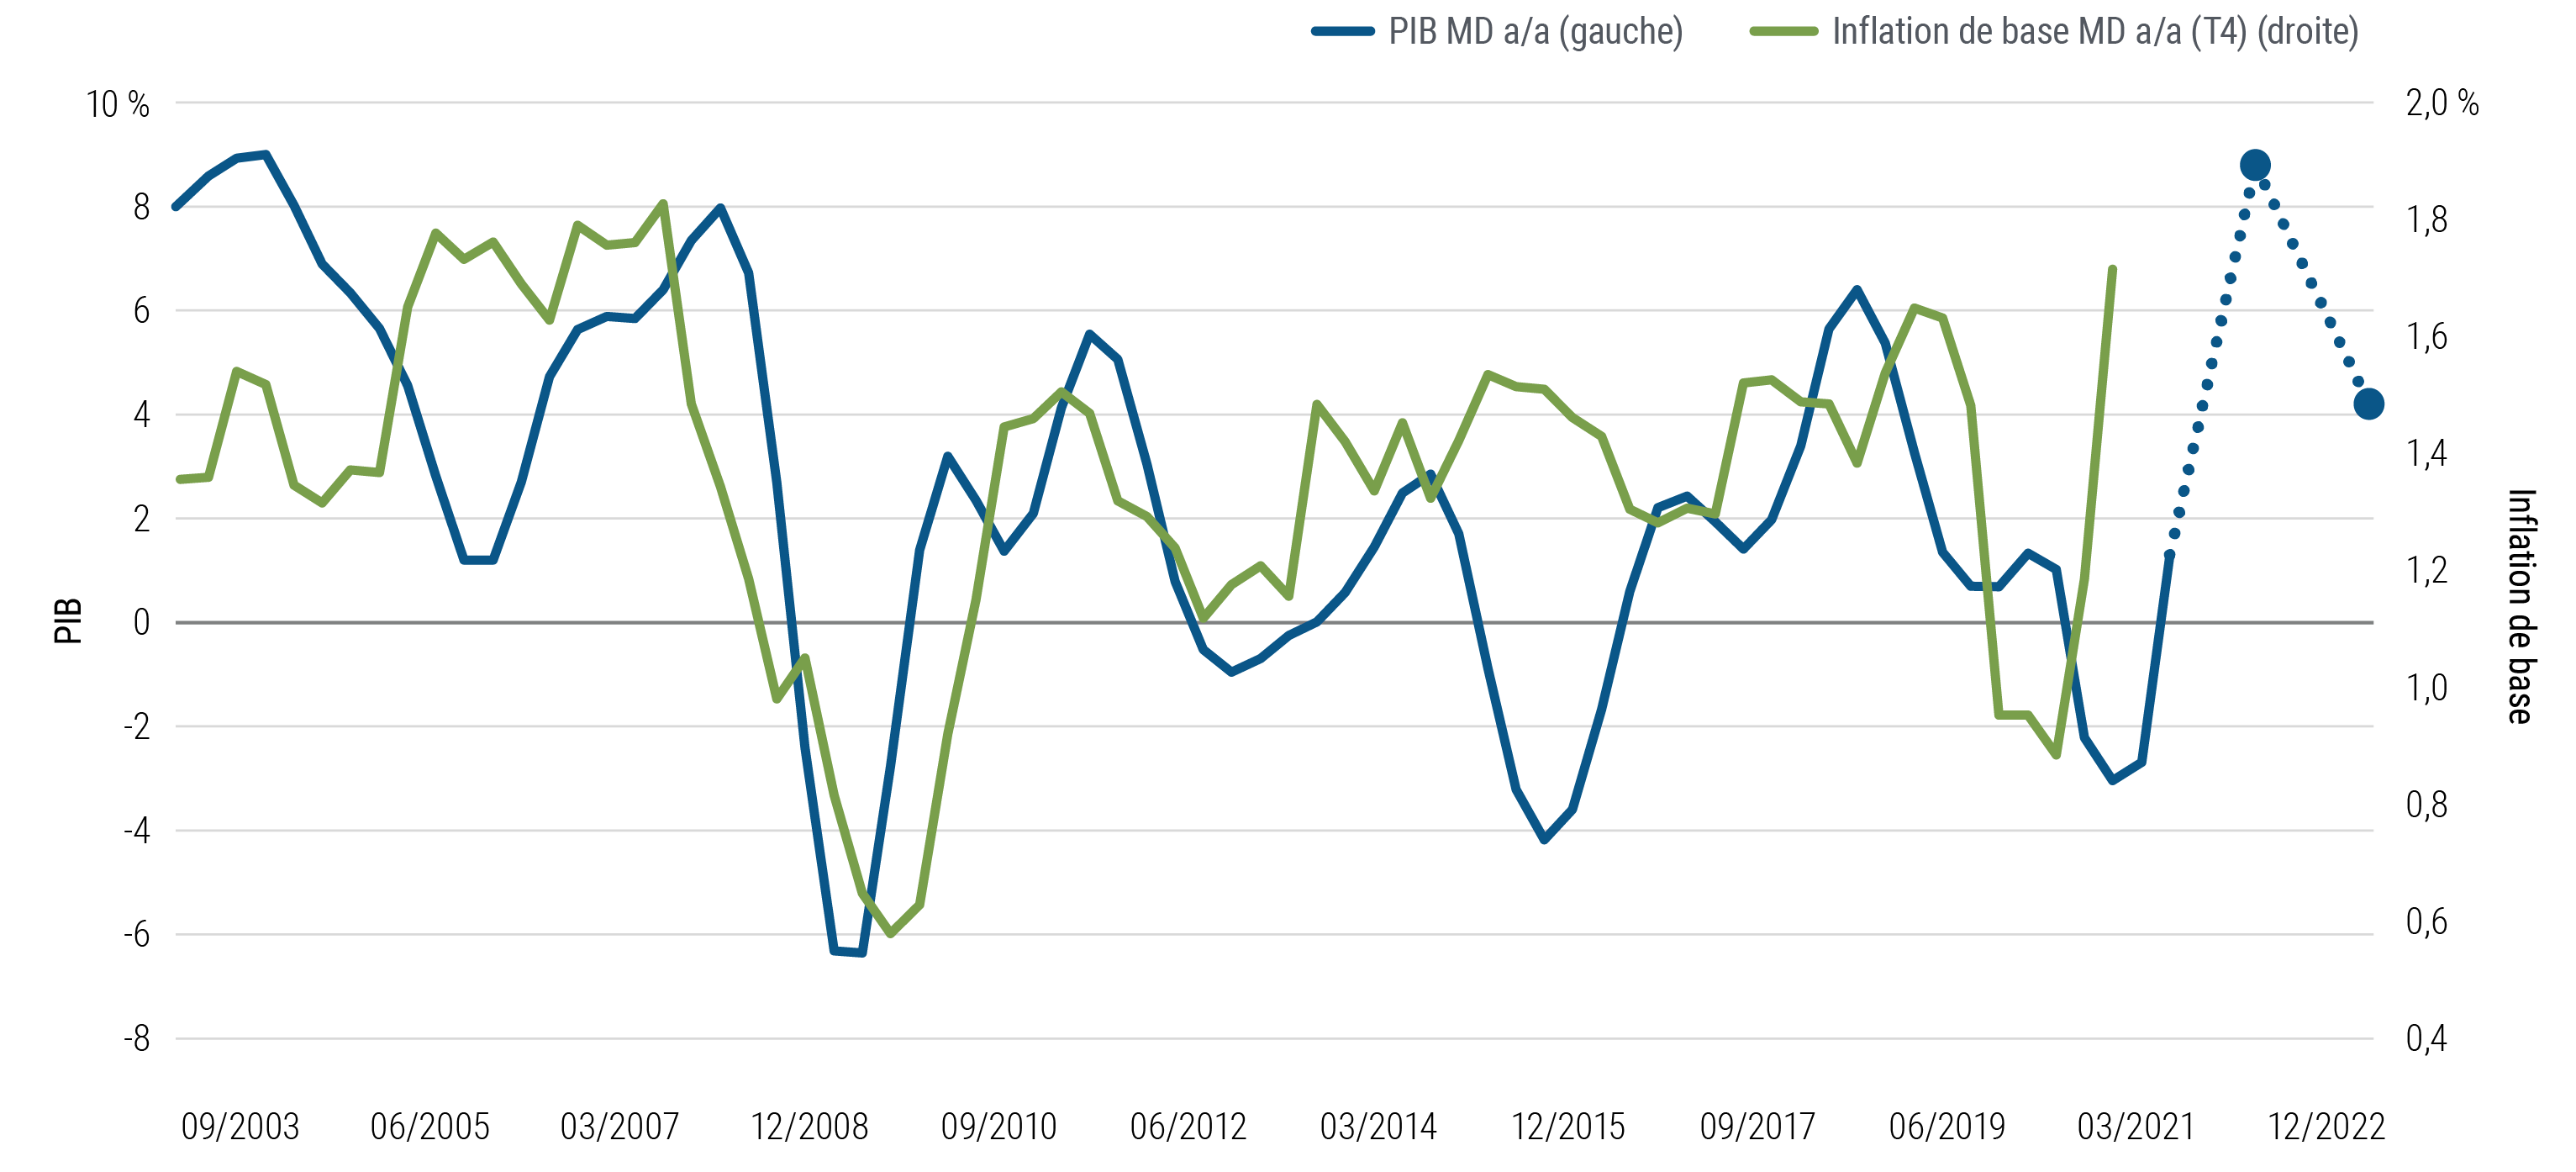 Le graphique 3 représente par deux courbes les tendances du PIB et de l'inflation de base (quatre trimestres plus tard) depuis 2003, au Canada, dans la zone euro, au Japon, au Royaume-Uni et aux États-Unis. L'inflation a souvent eu tendance à suivre la croissance du PIB, notamment durant la crise financière mondiale de 2008-2009 et durant la récession provoquée par la pandémie, en 2020. PIMCO prévoit que la croissance annuelle moyenne du PIB culmine dans ces régions en 2021, puis ralentisse ensuite (tout en restant positive) en 2022. L'inflation a fortement augmenté en 2021 (comme nous le précisons dans ce document) et atteindra elle aussi un pic, avant de ralentir à l'horizon cyclique. 